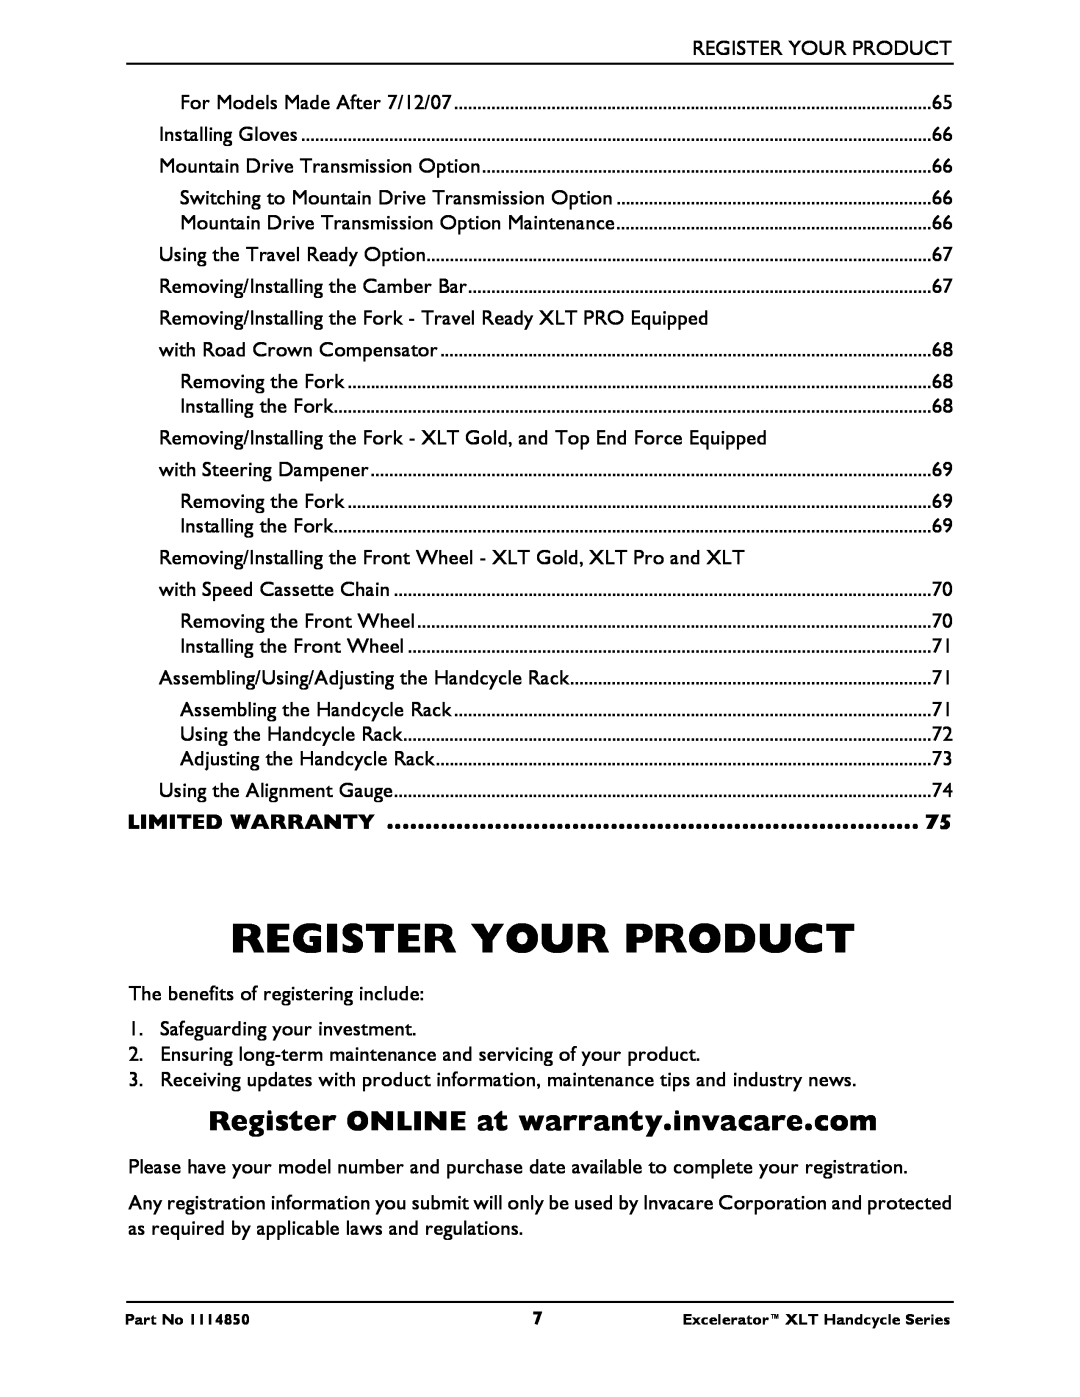 Invacare XLT Gold, XLTPRO, XLT Jr, Force Register Your Product, Register ONLINE at warranty.invacare.com, Limited Warranty 